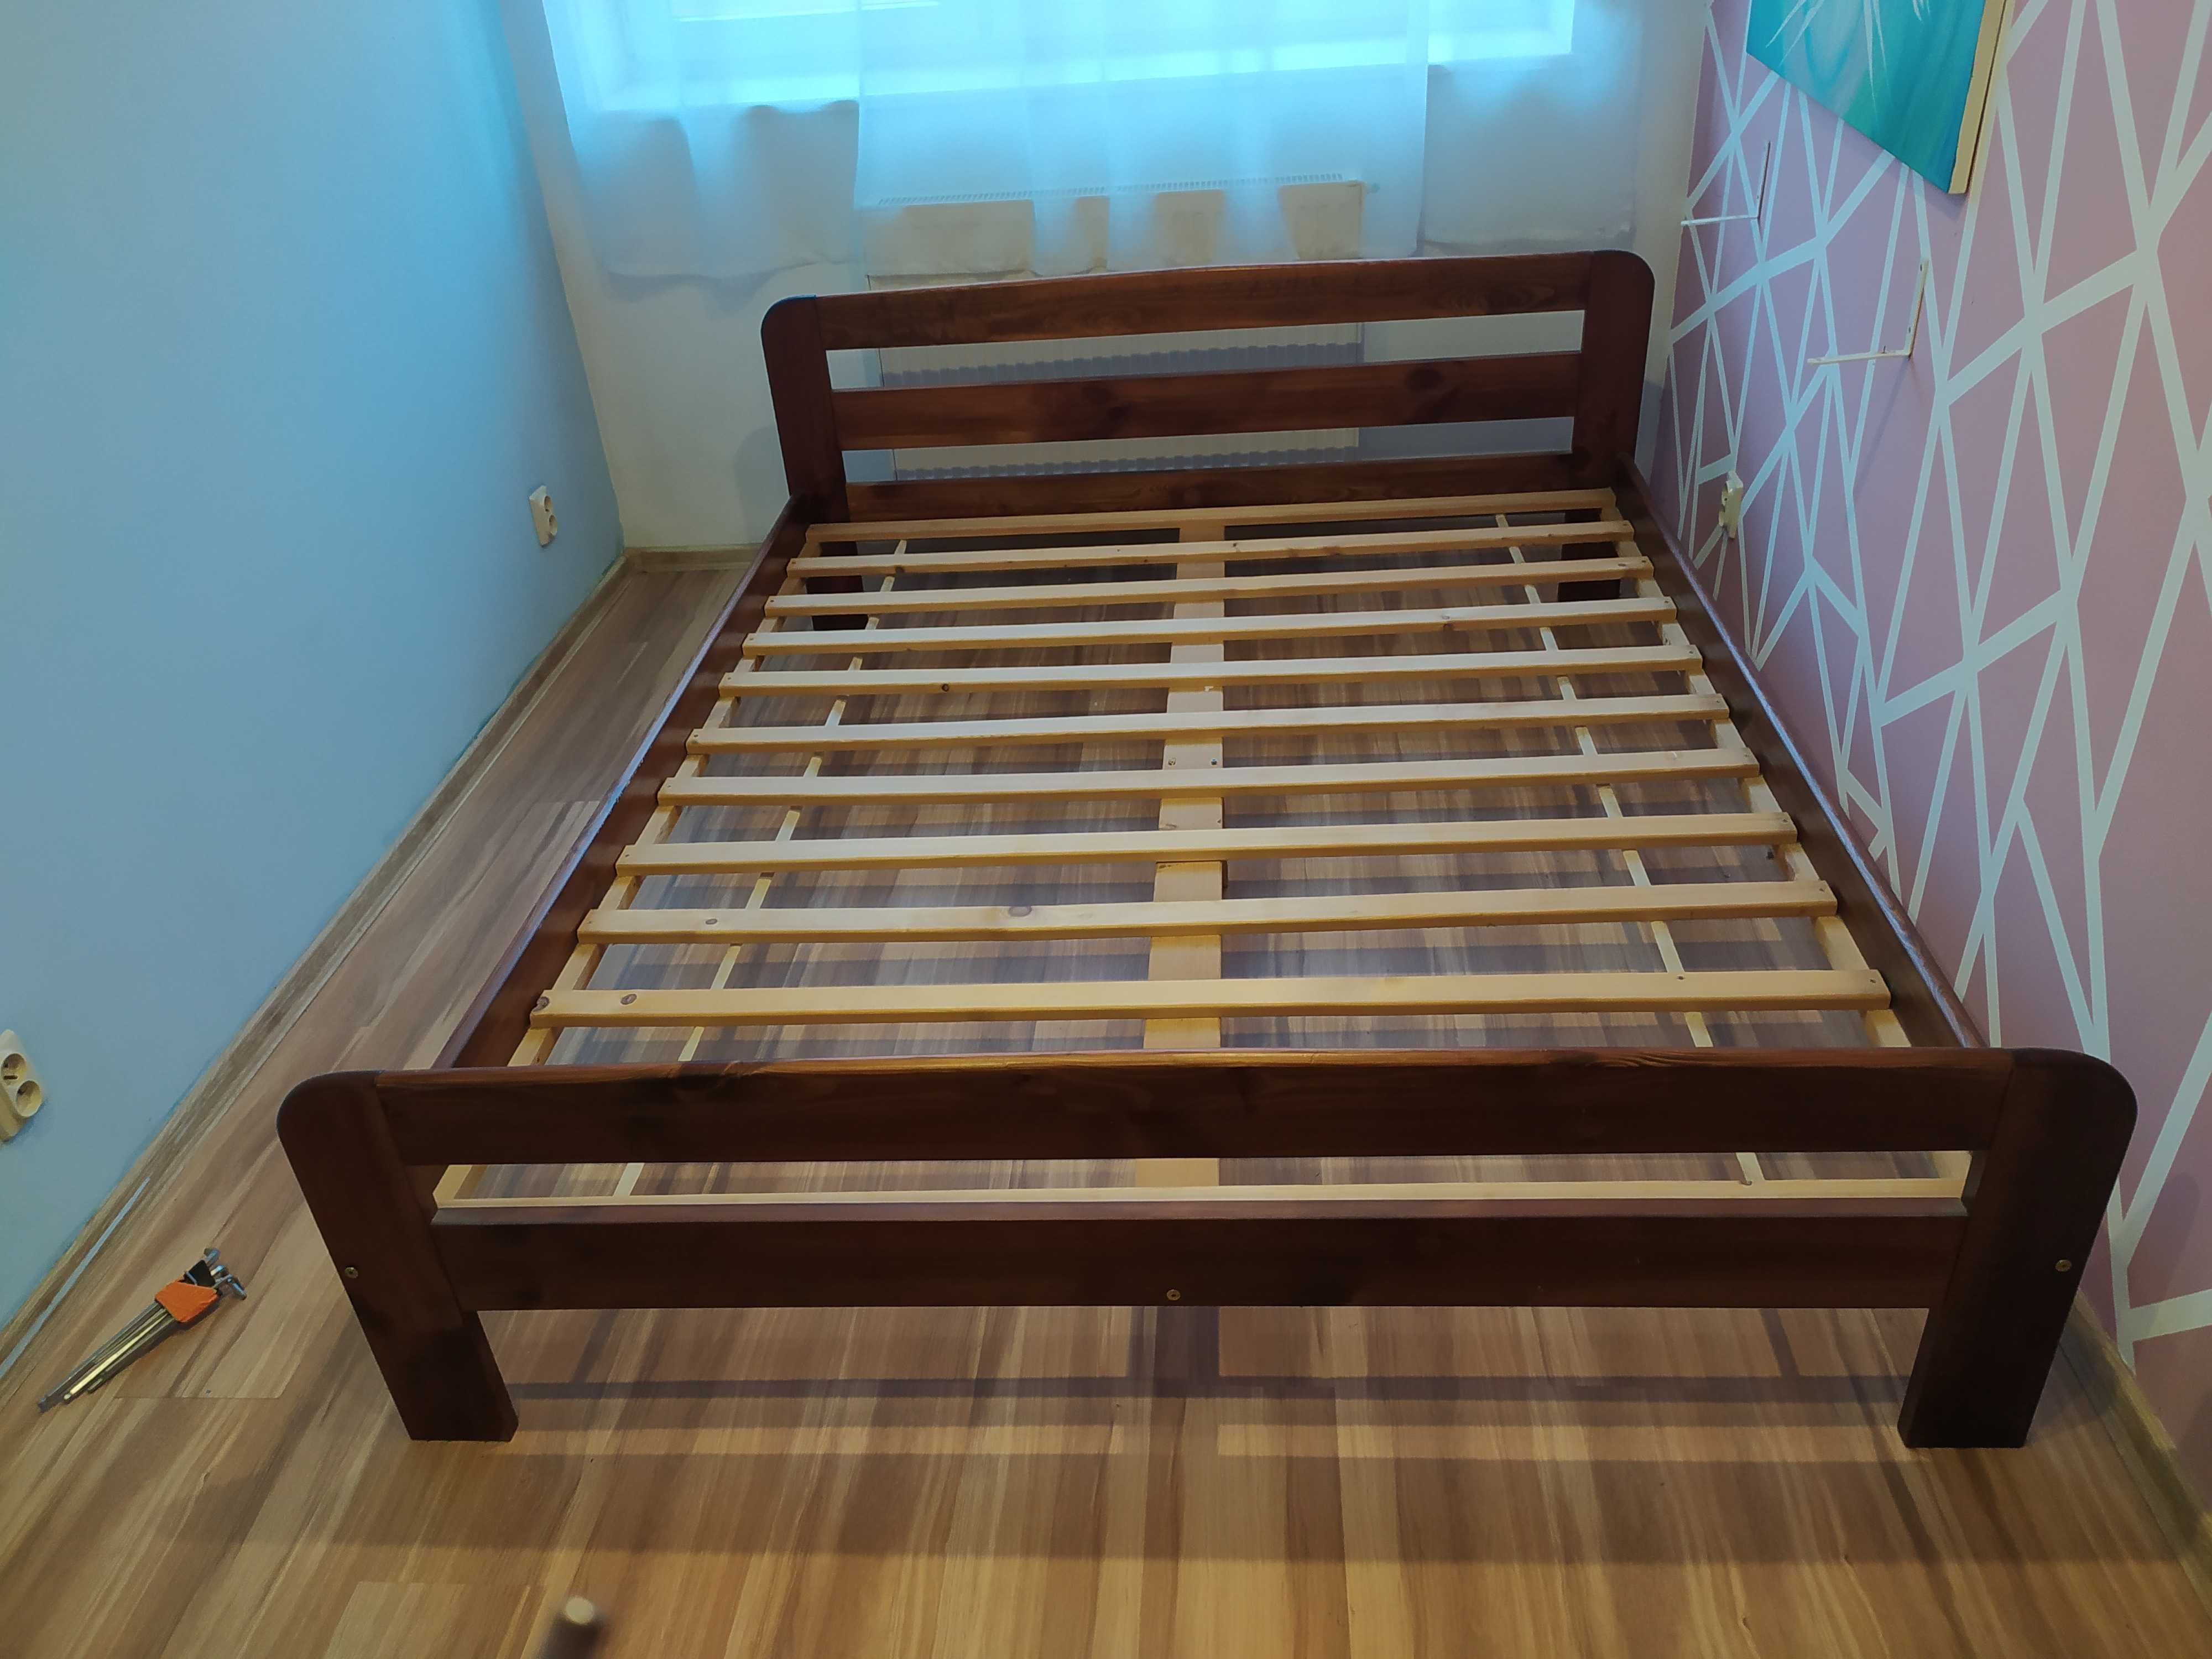 Drewniane łóżko sosnowe